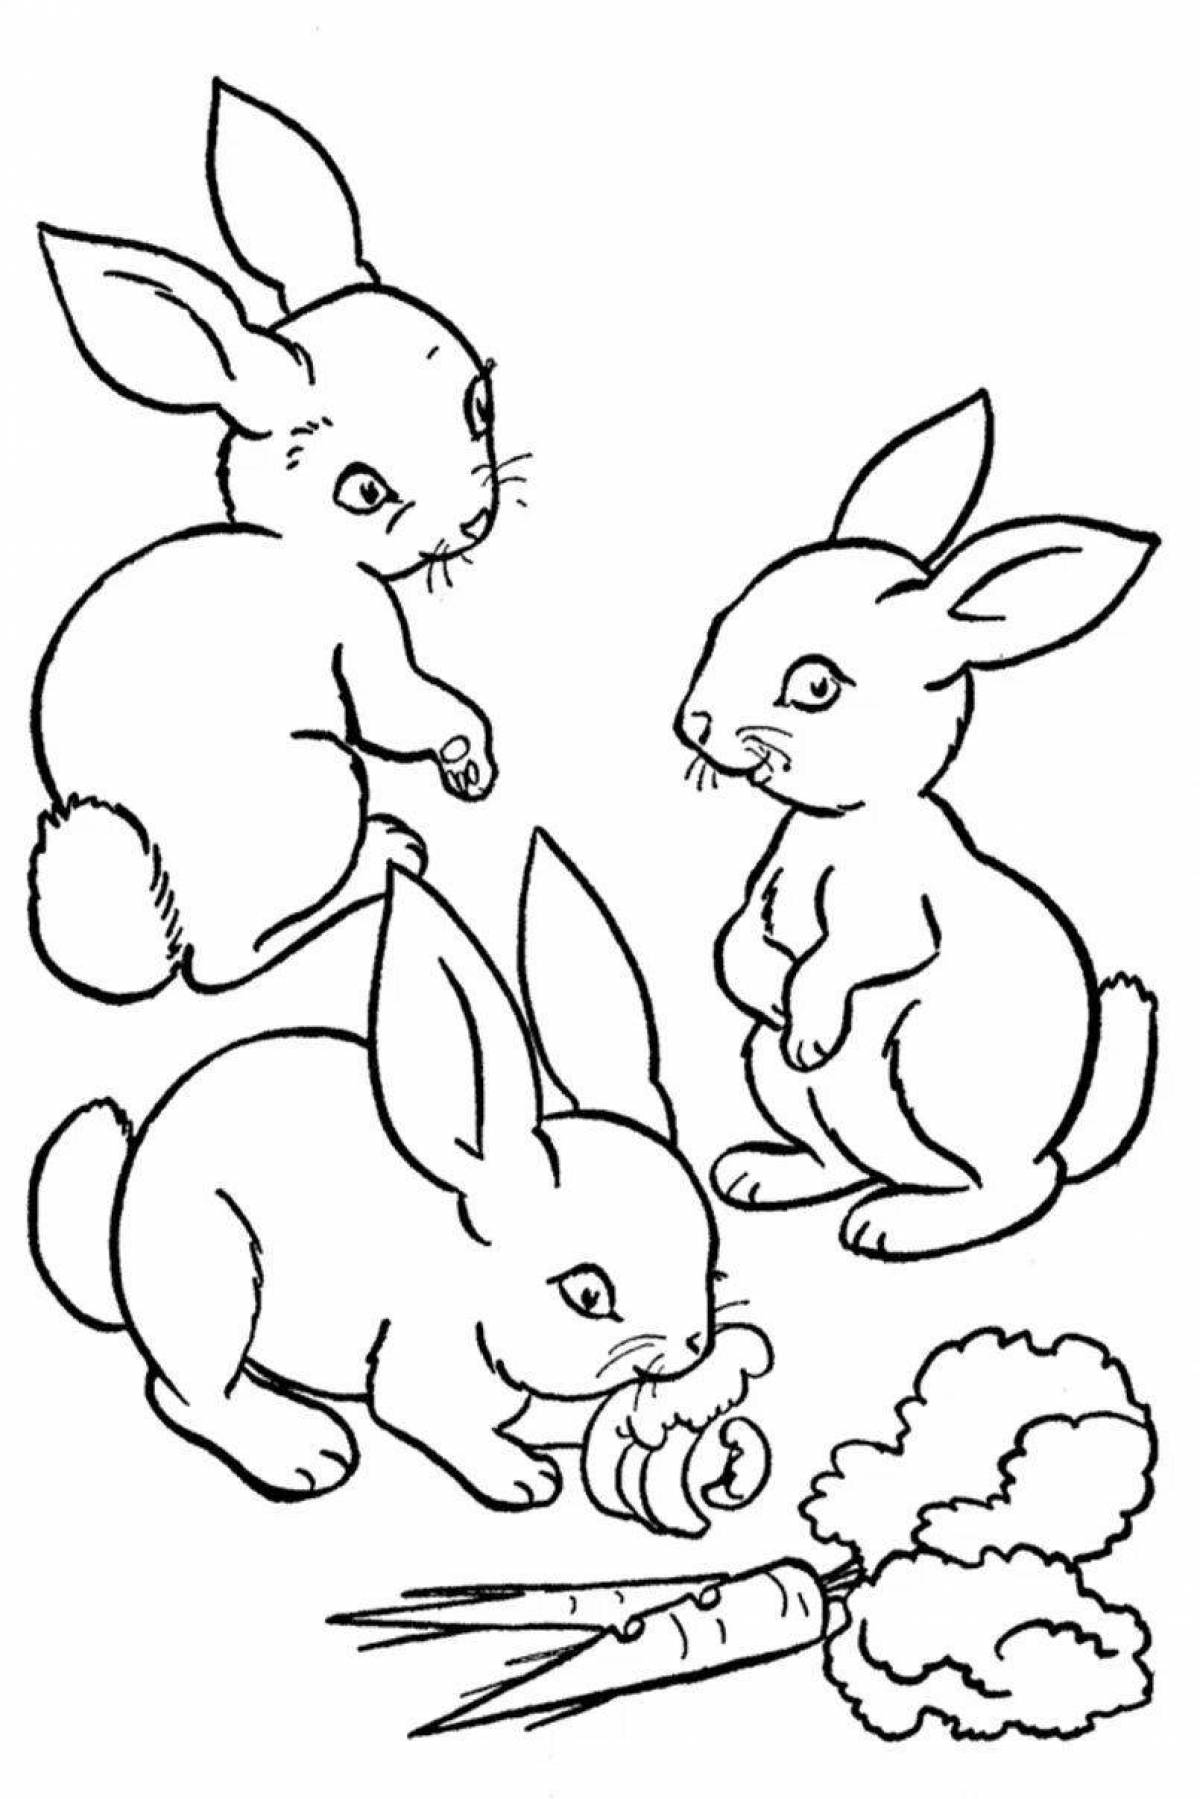 Serene hare family